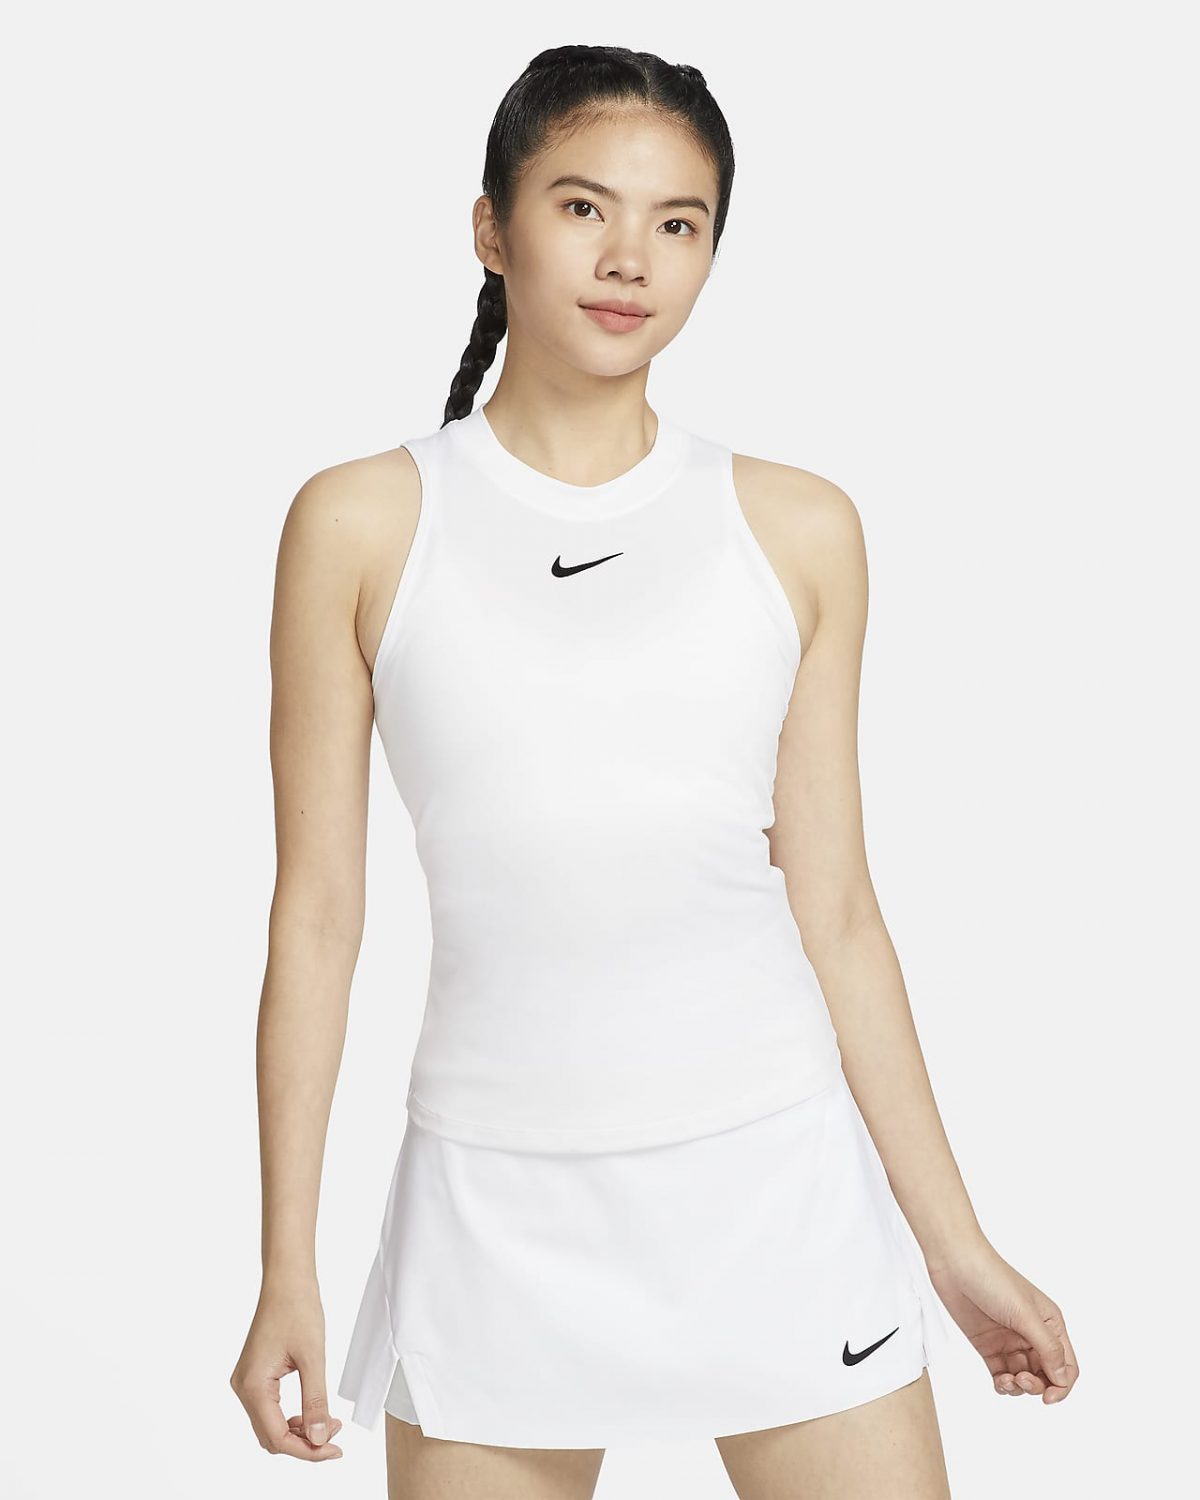 Женская спортивная одежда NikeCourt Advantage фото